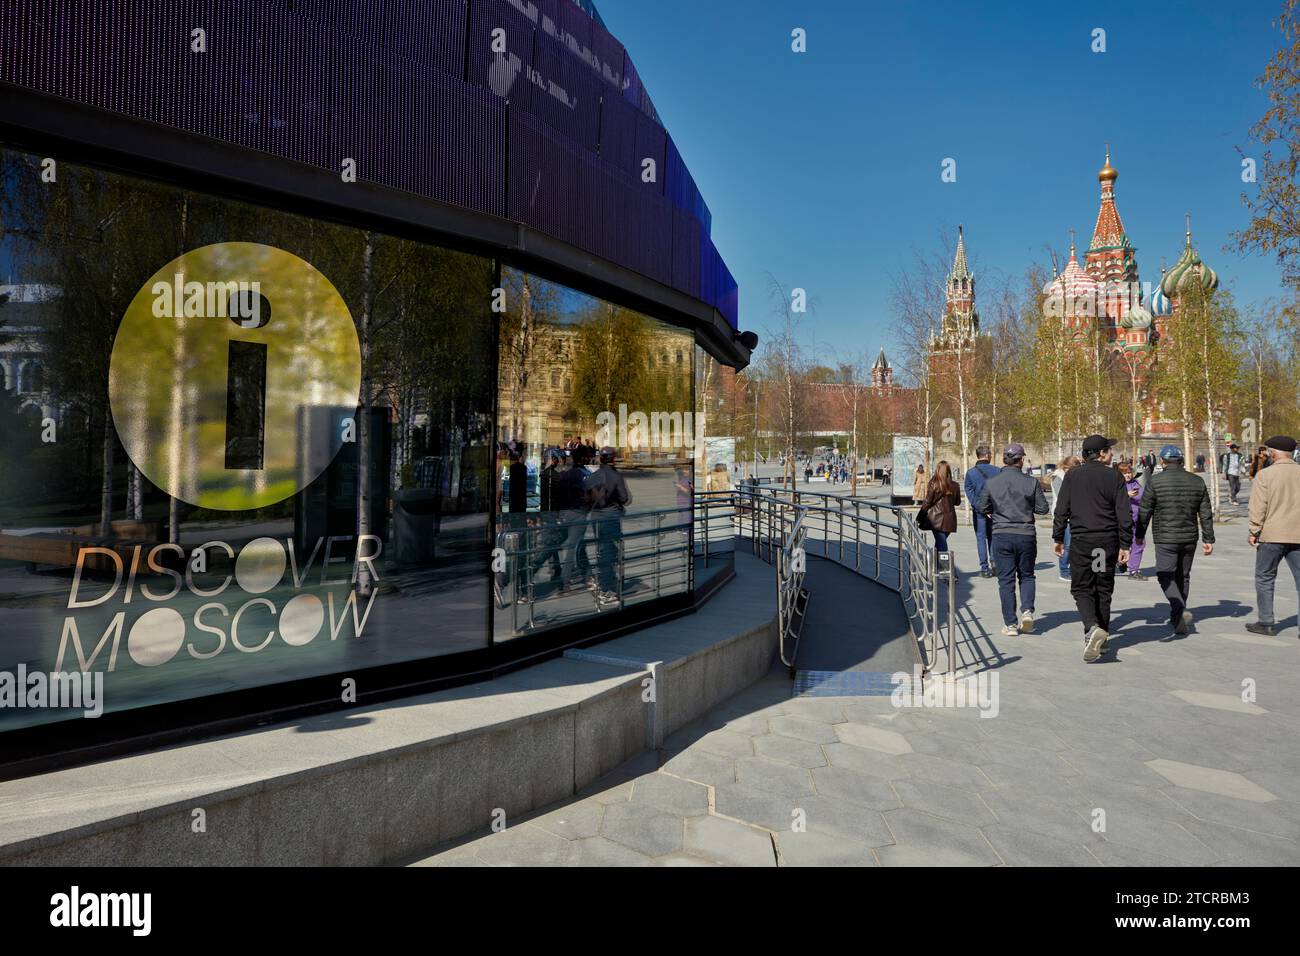 Les gens marchent près du pavillon d’information « Discover Moscow » près de la place Rouge. Moscou, Fédération de Russie. Banque D'Images